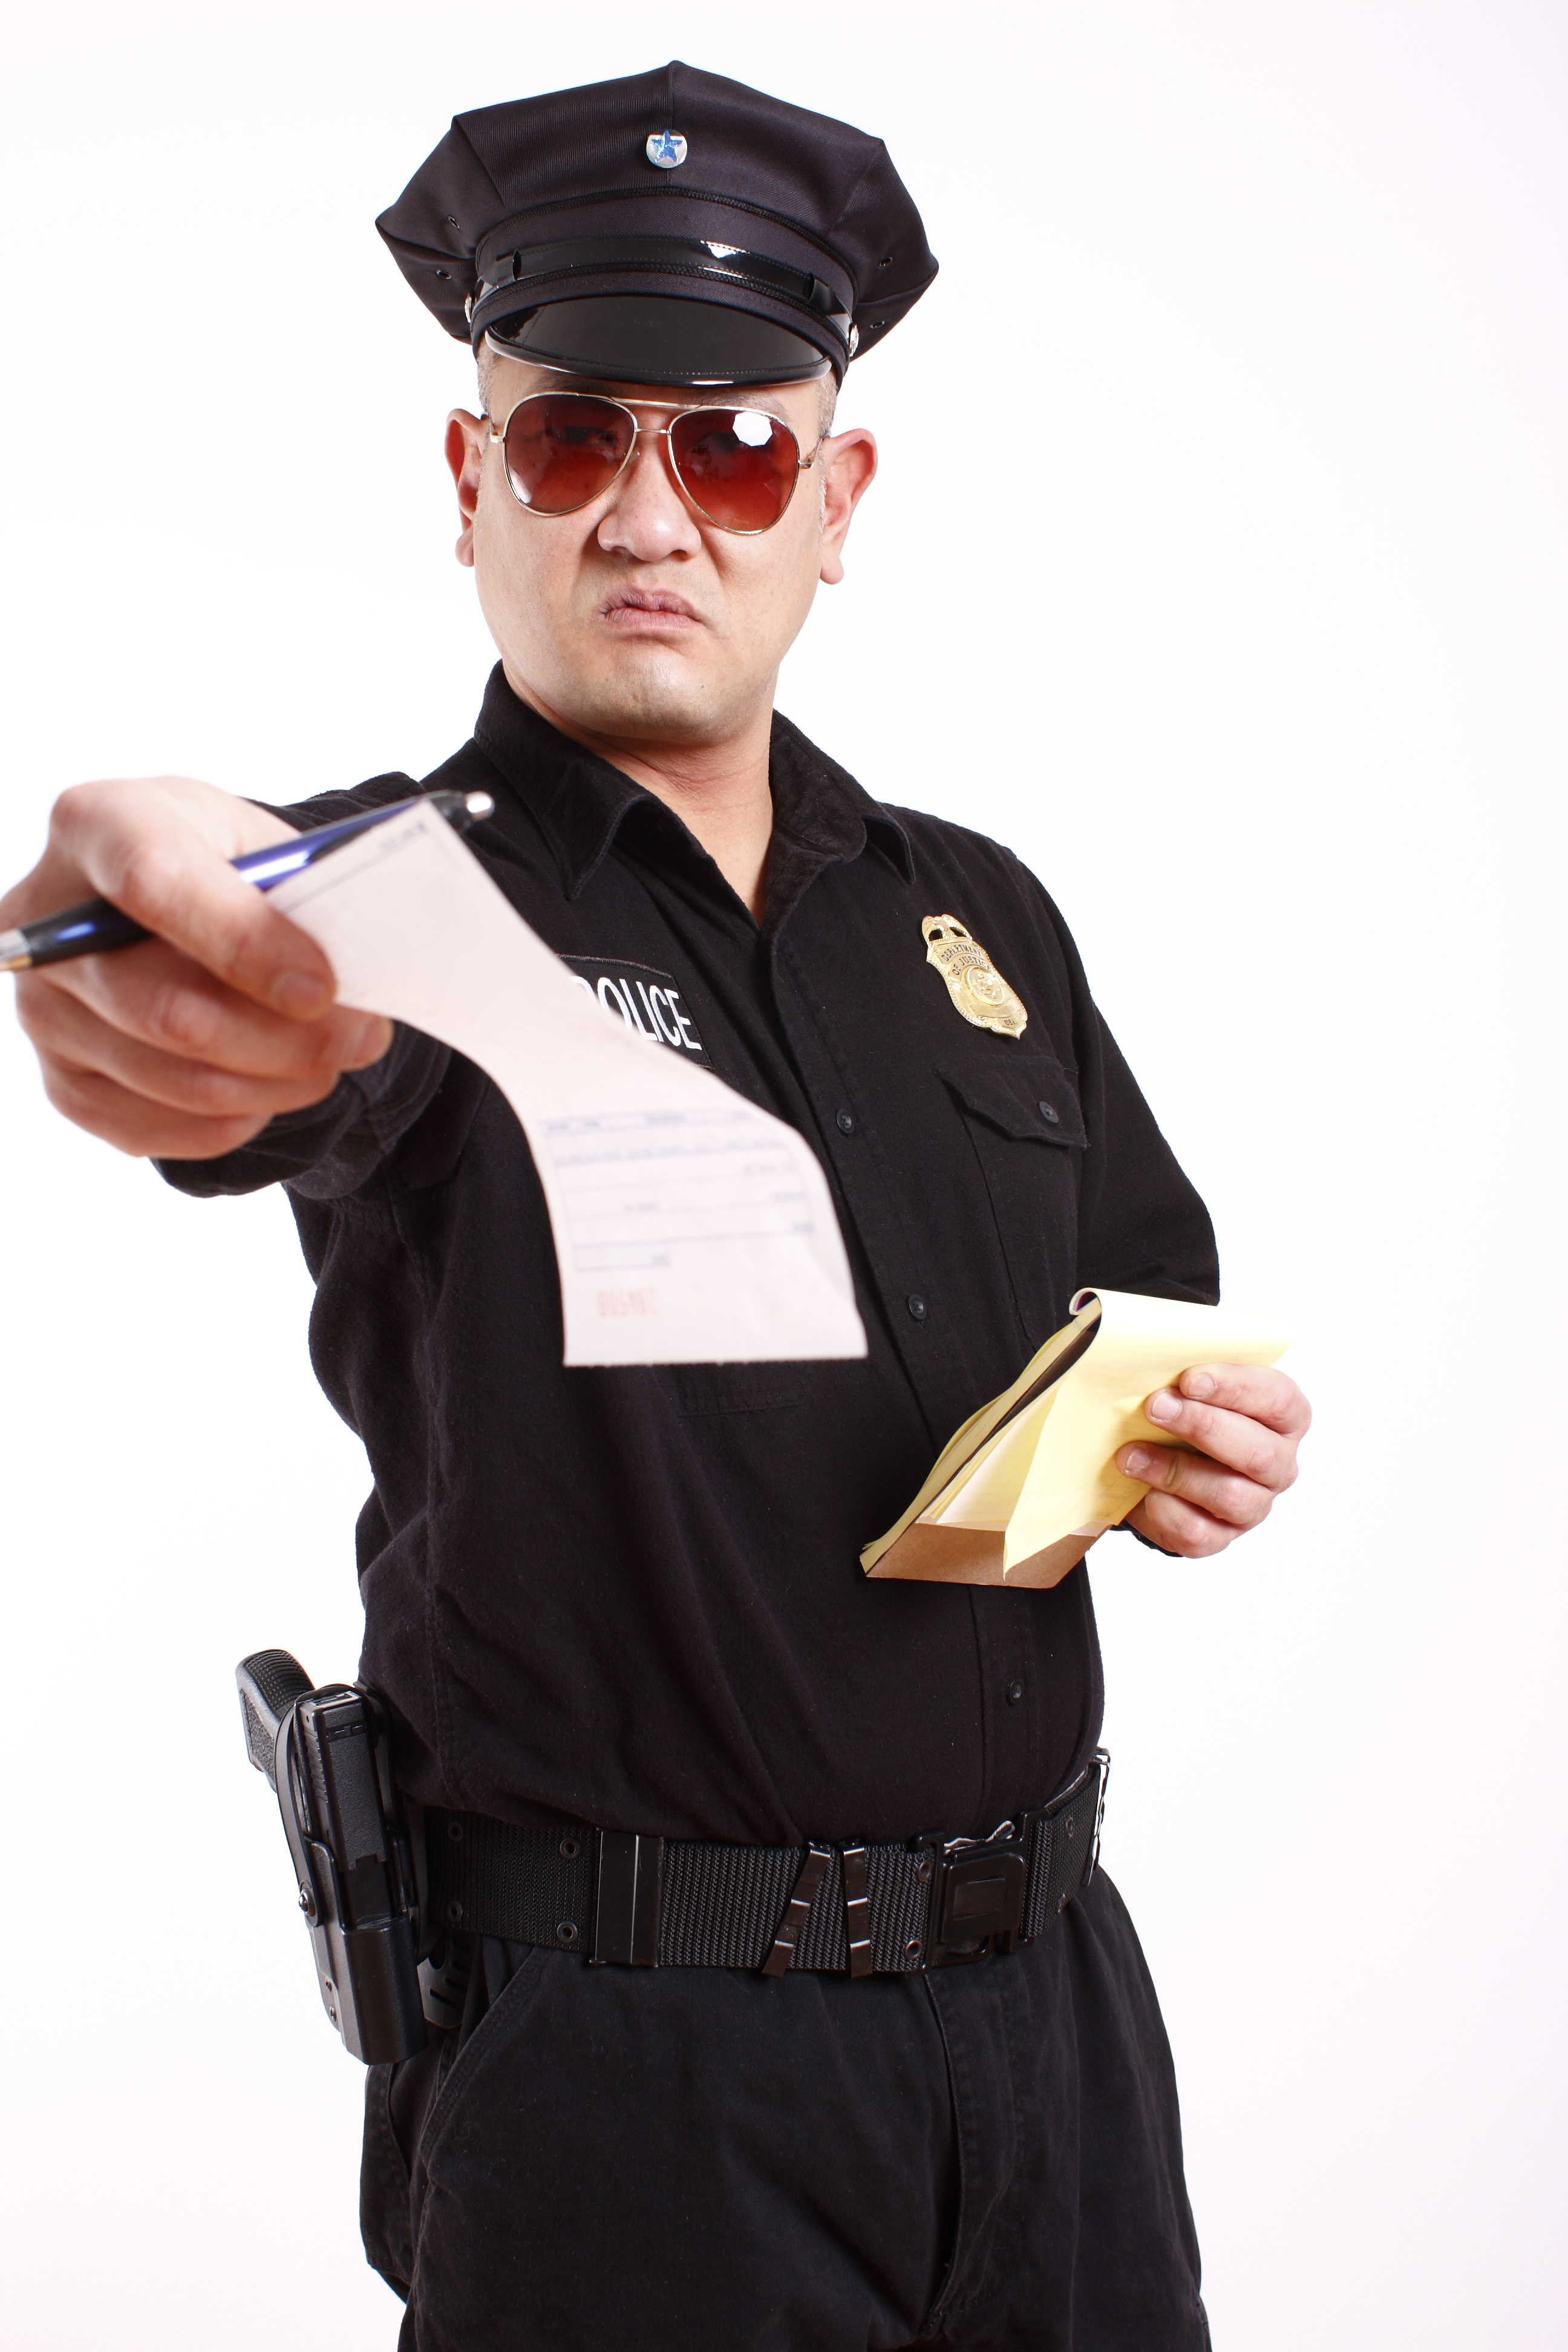 Un agent de police avec une contravention. | Source : Shutterstock